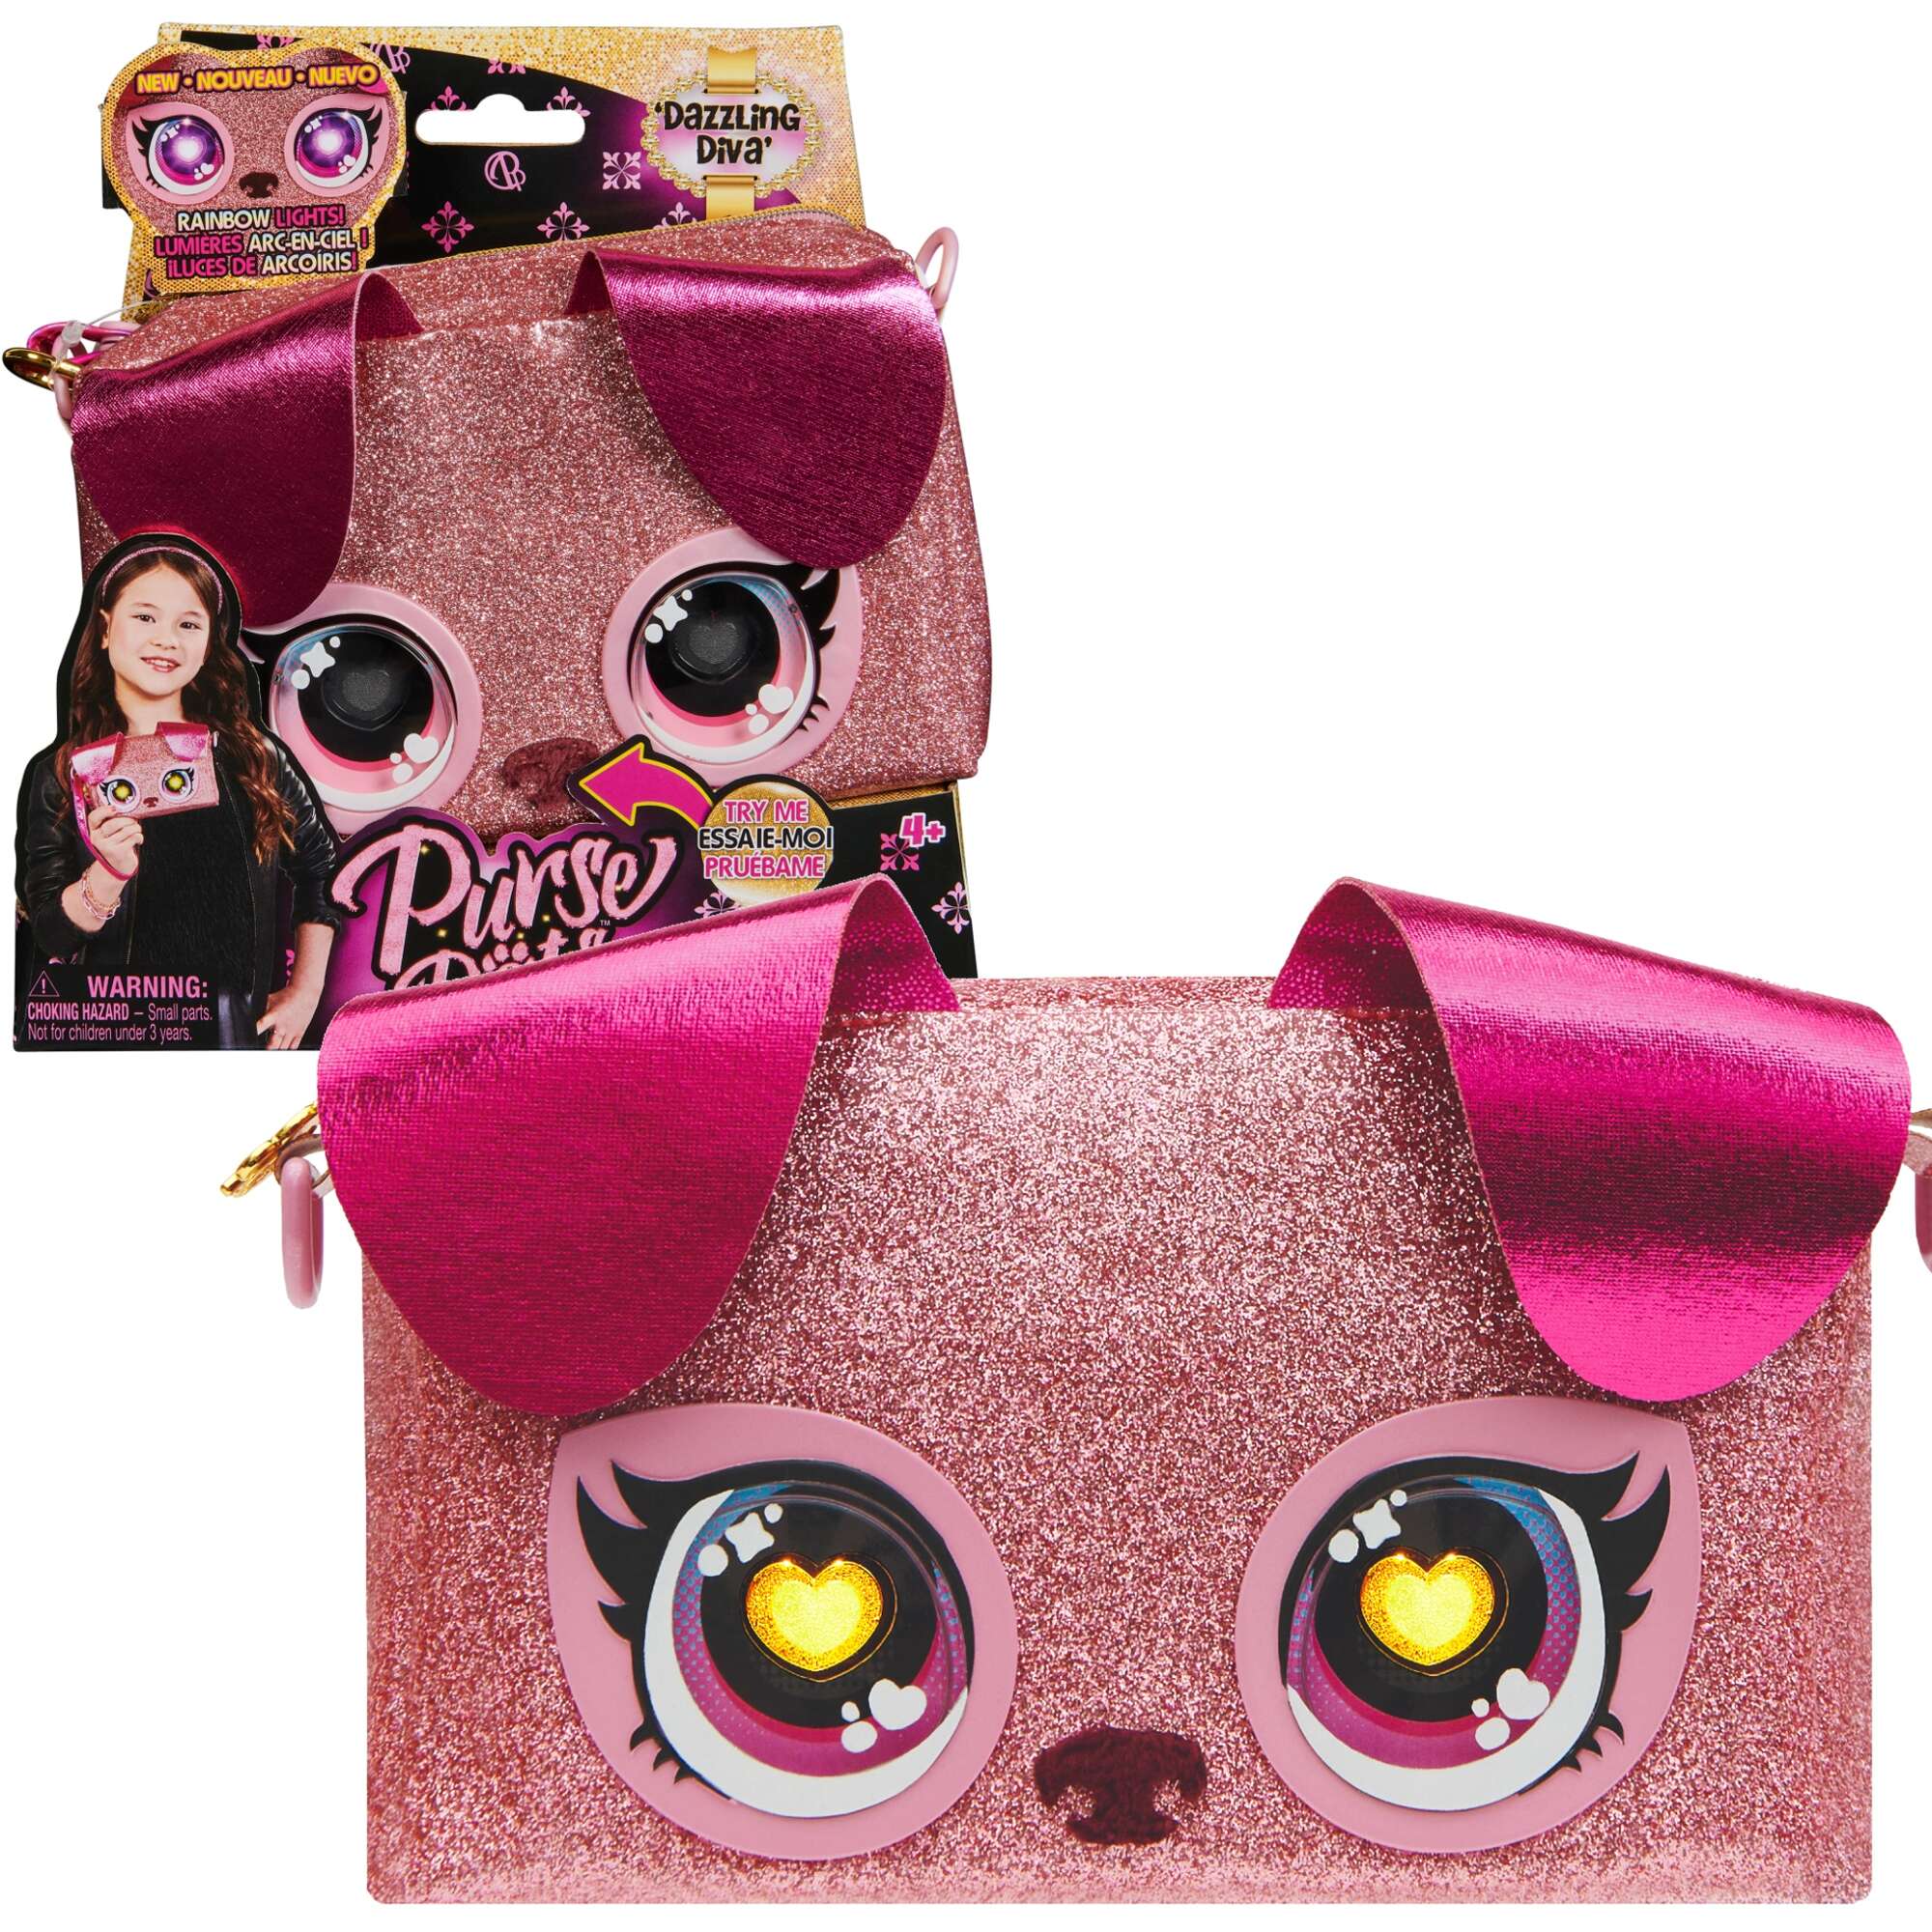 Purse Pets Dazzling Diva torebka z tczowymi oczami